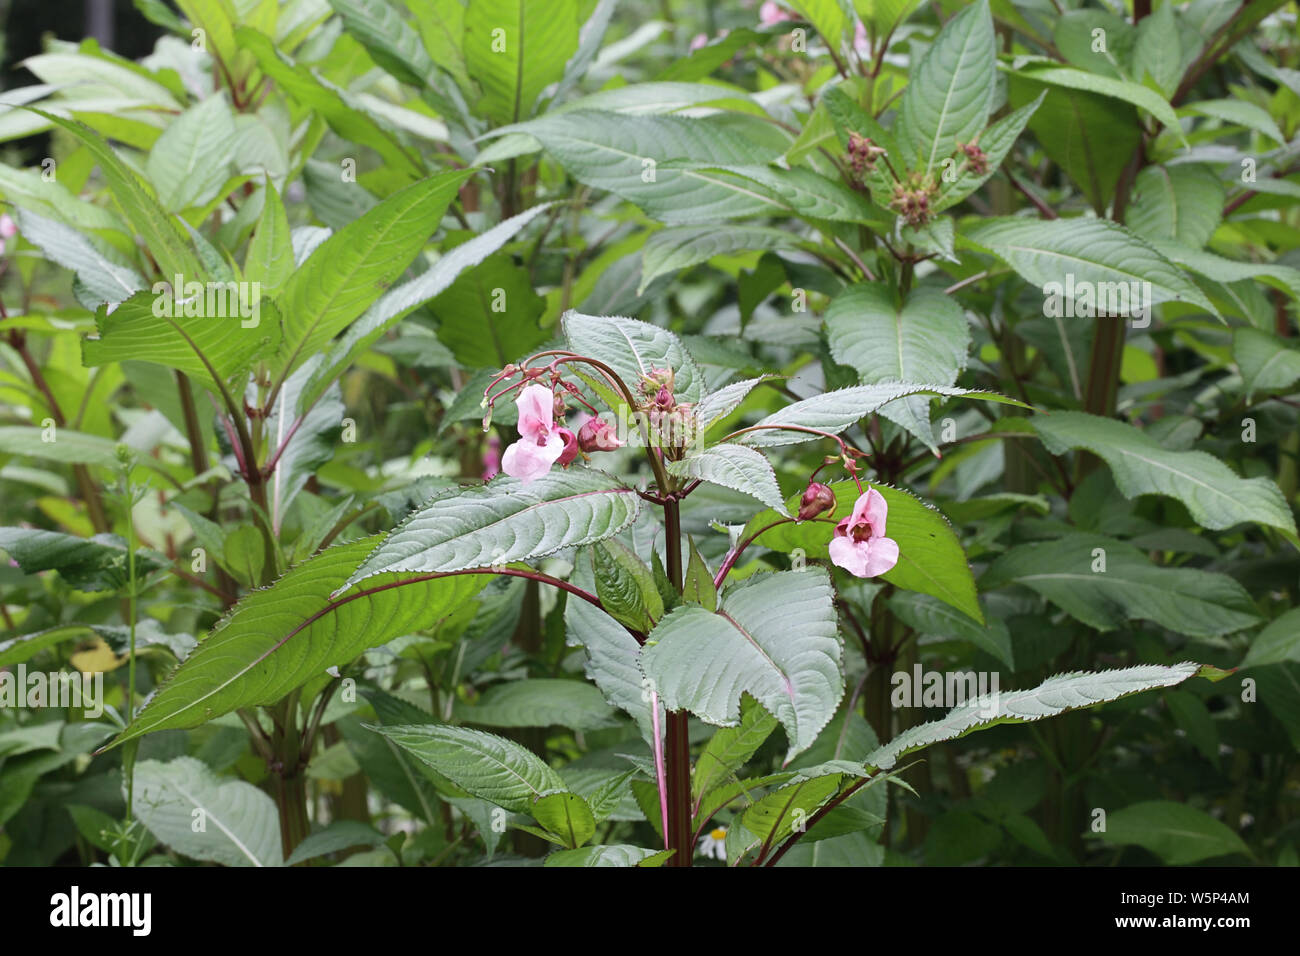 Impatiens glandulifera, wie Himalayan Balsam, eine sehr invasive schädliche Pflanze bekannt Stockfoto